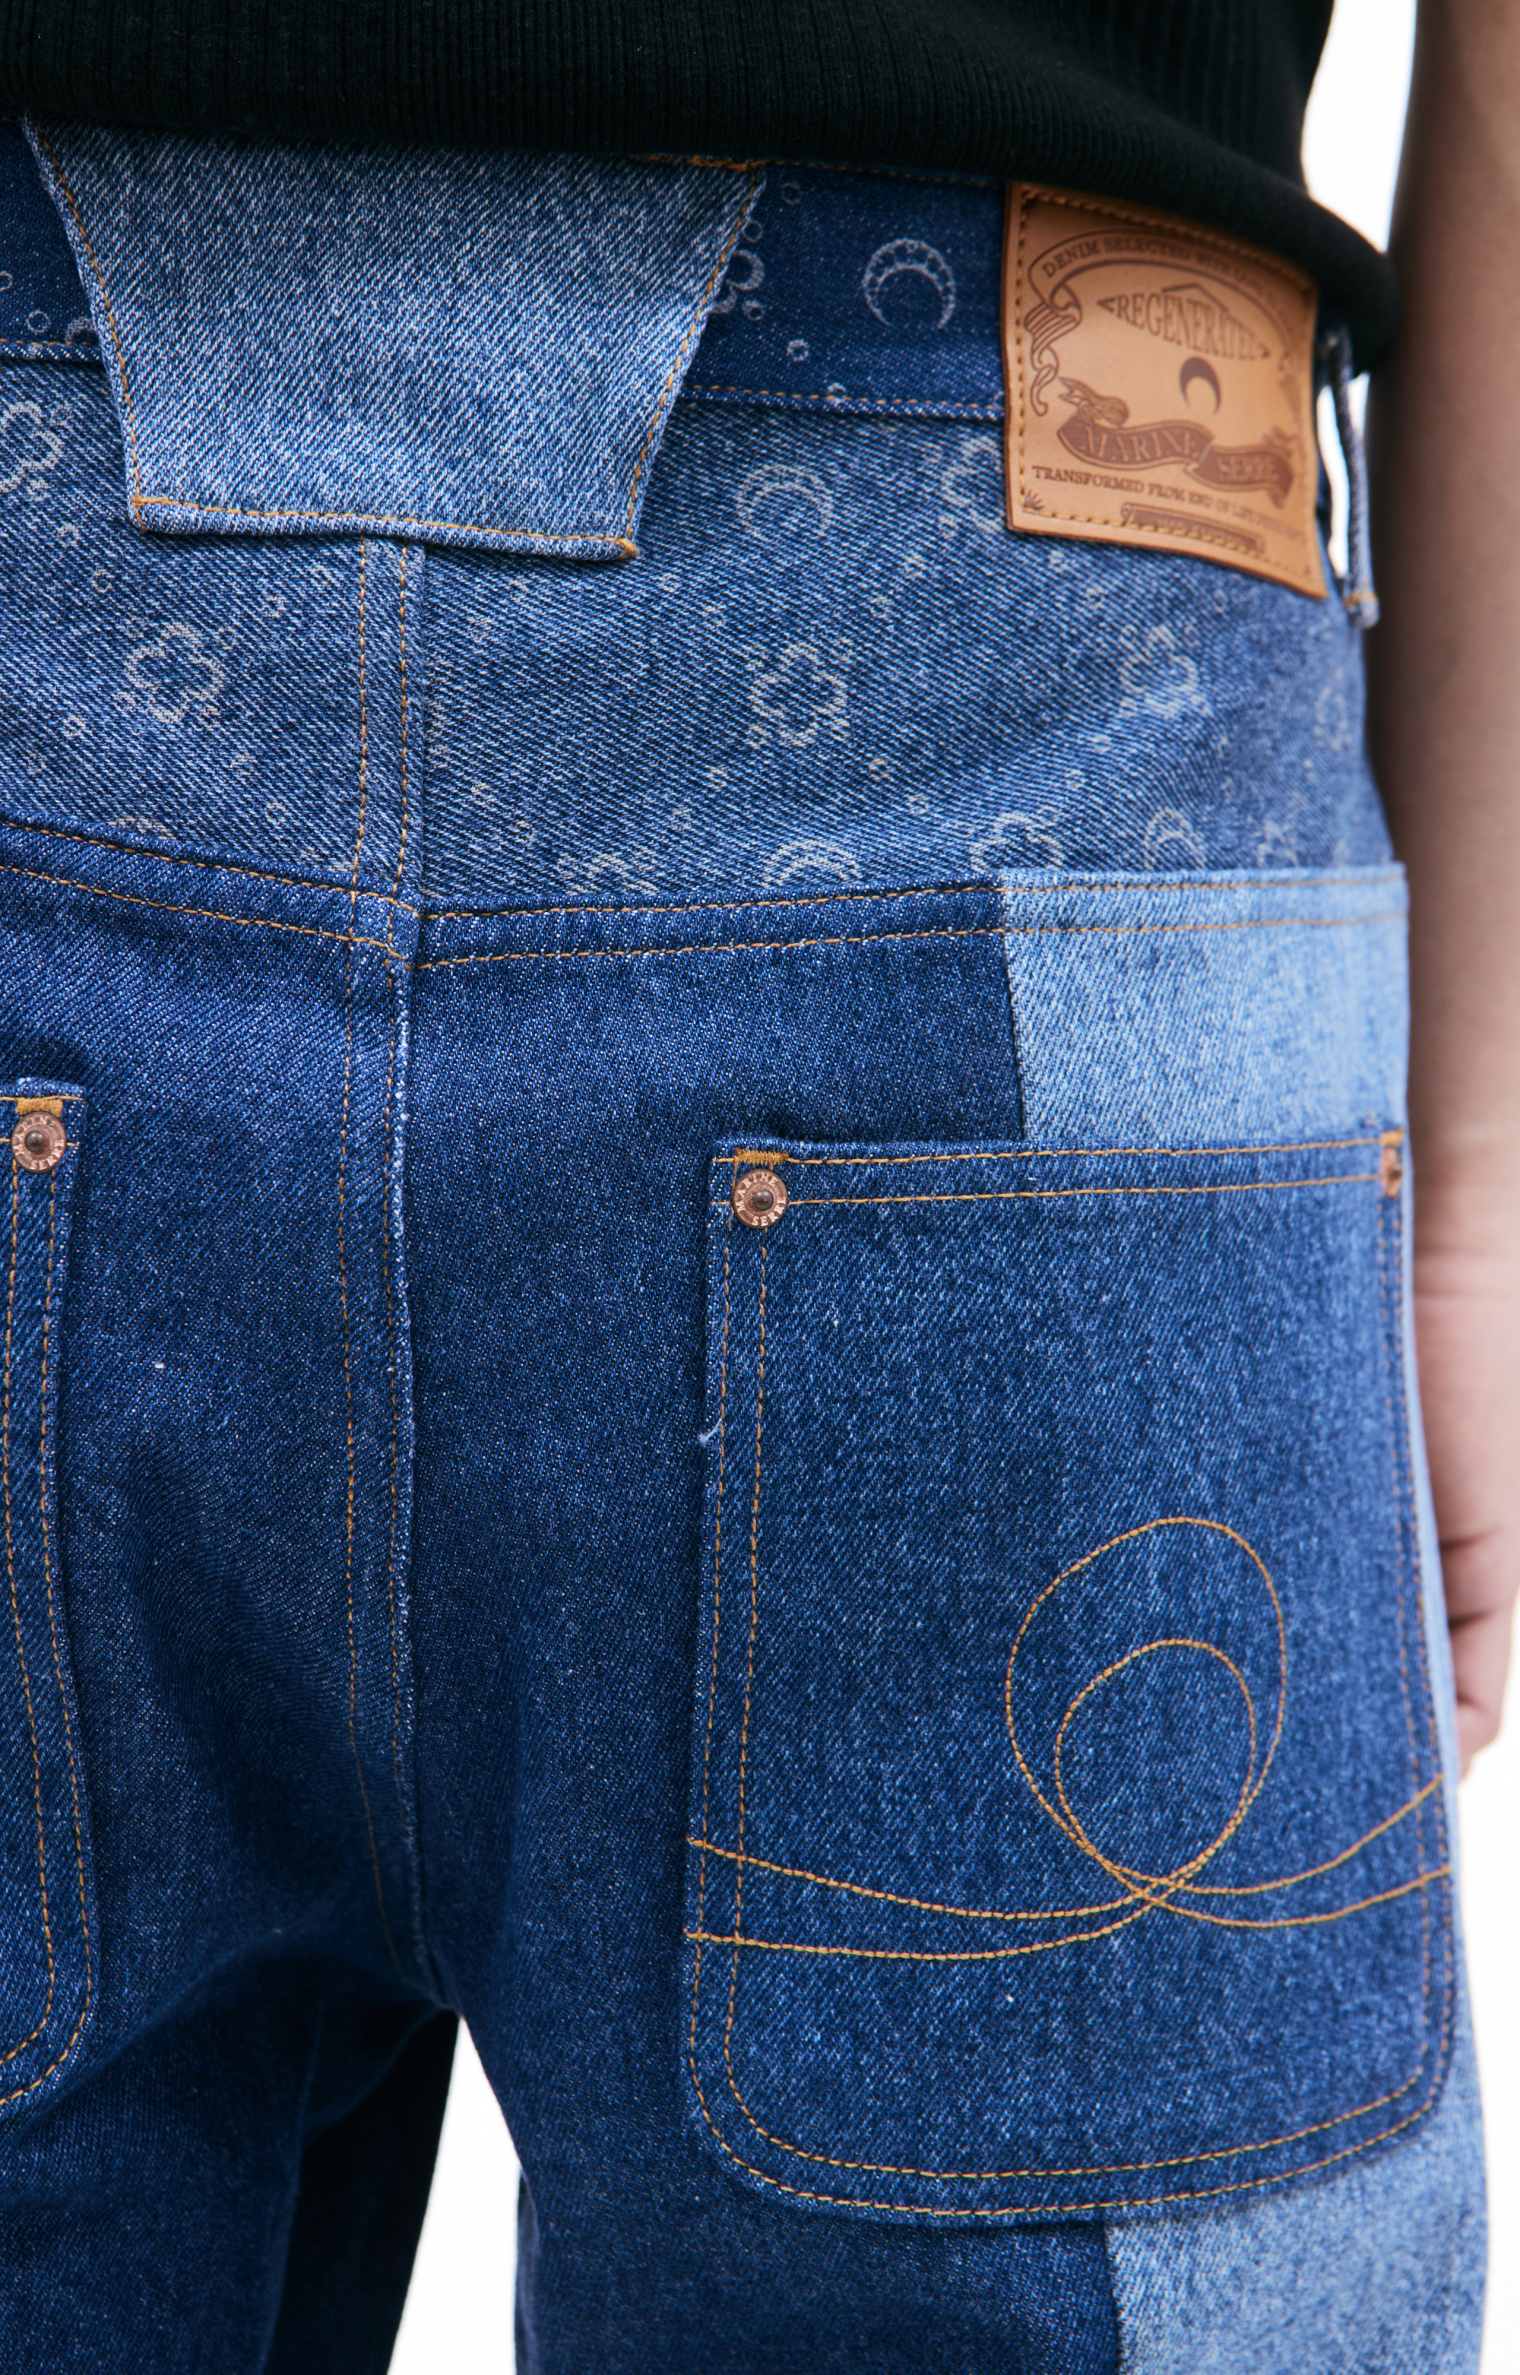 MARINE SERRE Moonogram printed jeans